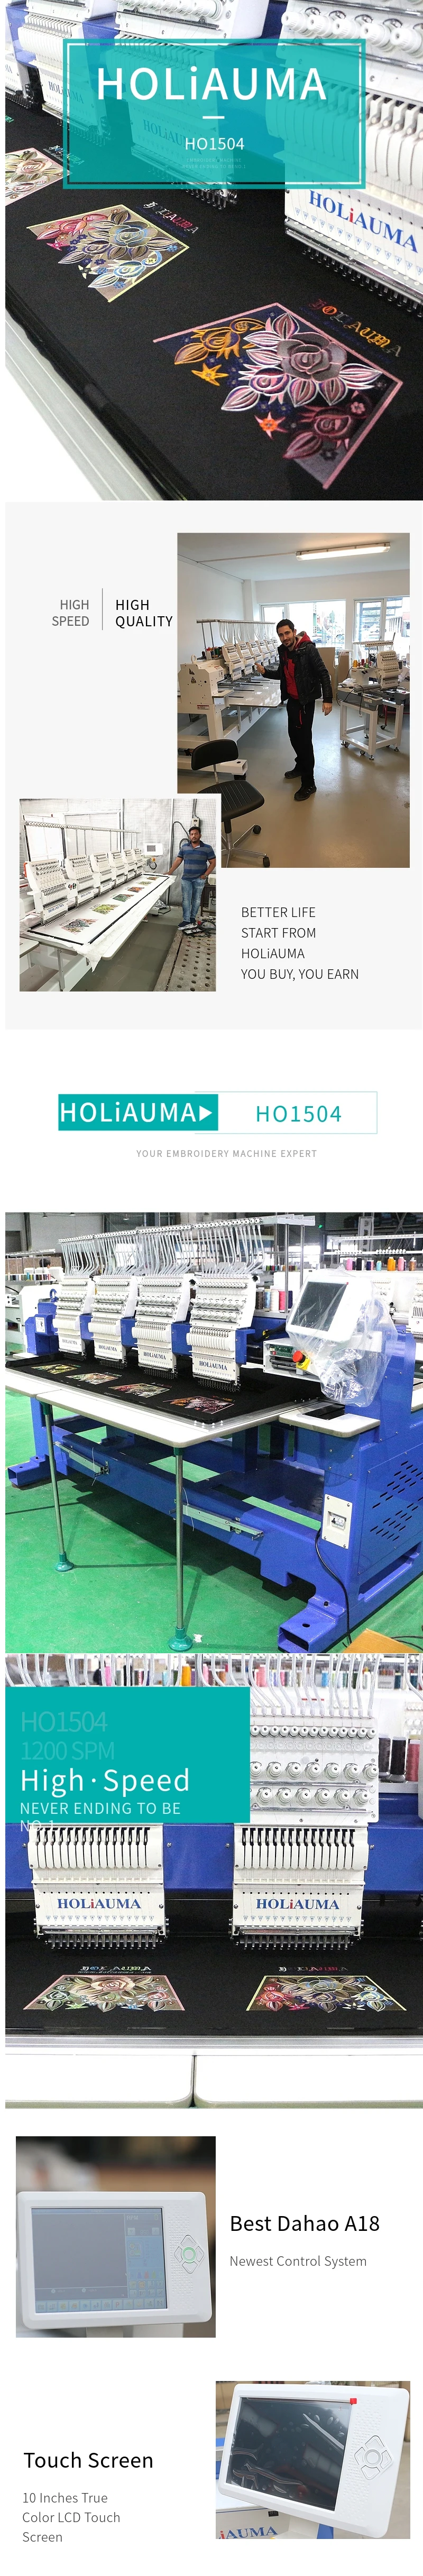 Ho1504 dahao A18 4 головки вышивальная машинка со встроенным компьютером высокоскоростная крышка/футболка/плоская/3d промышленная вышивальная машина для продажи